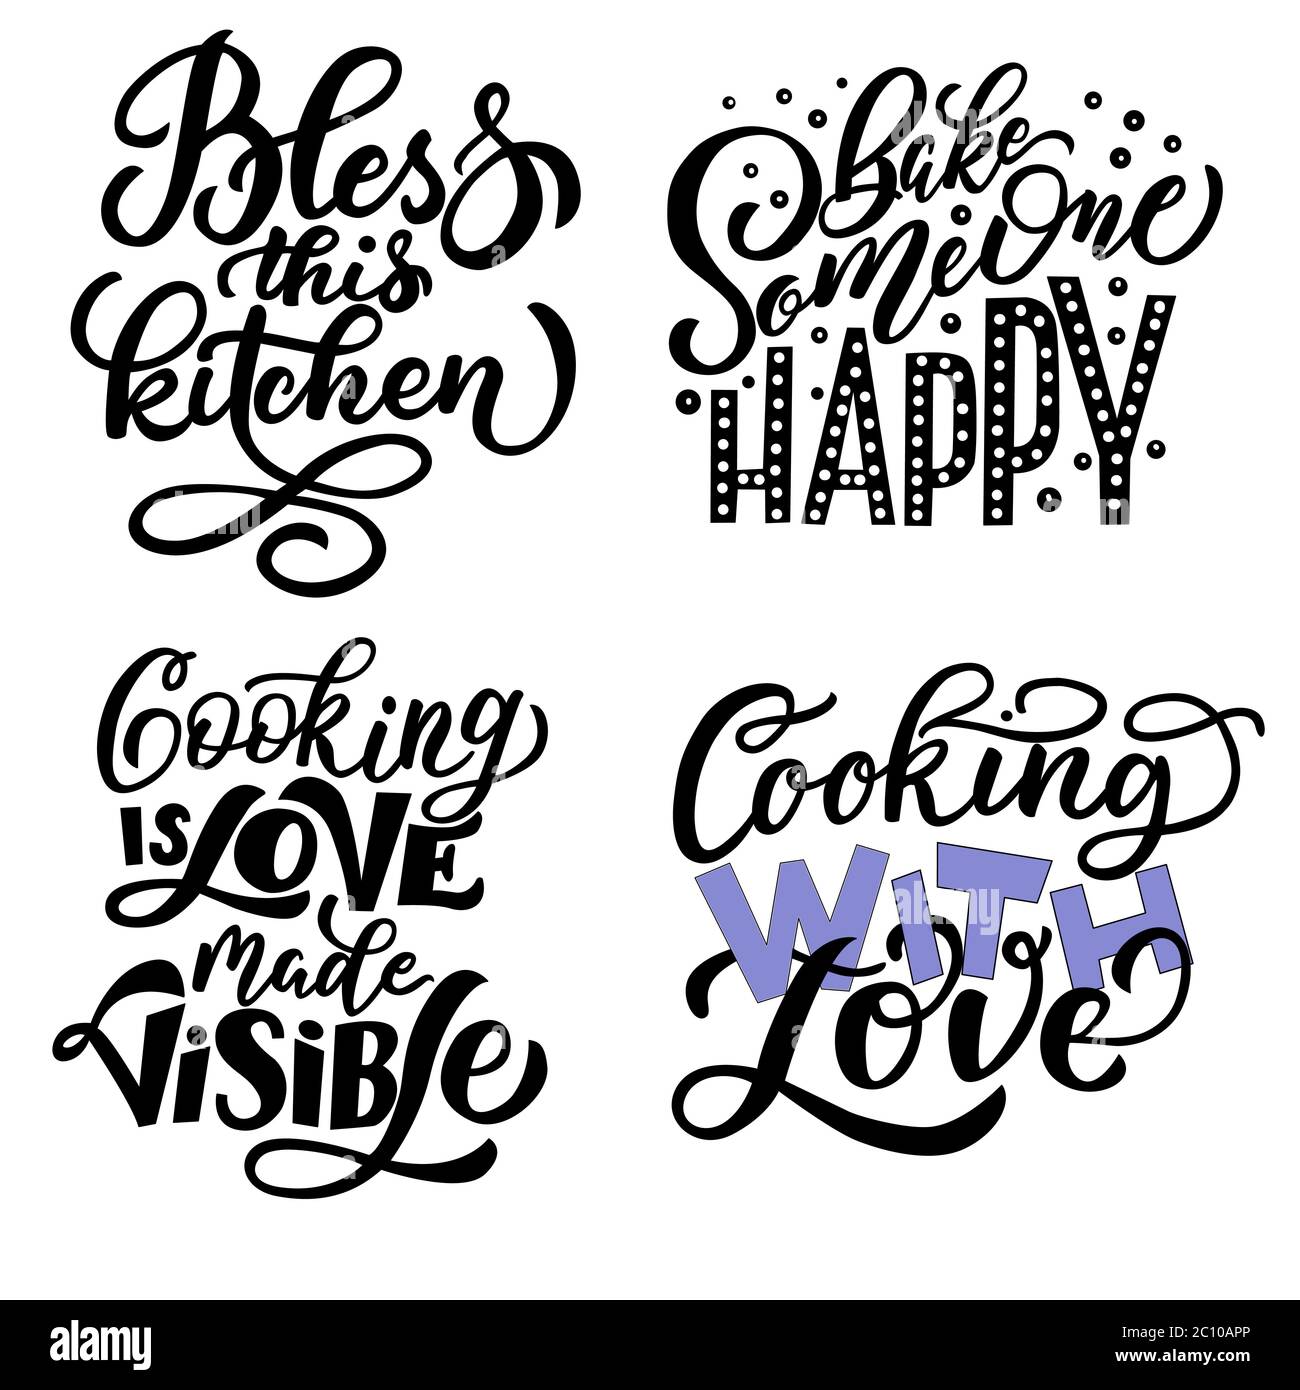 Eine Reihe von motivierenden Phrasen über Küche. Vektorgrafiken auf weißem Hintergrund, für die Gestaltung von Postkarten, Plakaten, Bannern, Drucken für T-Shirts Stock Vektor